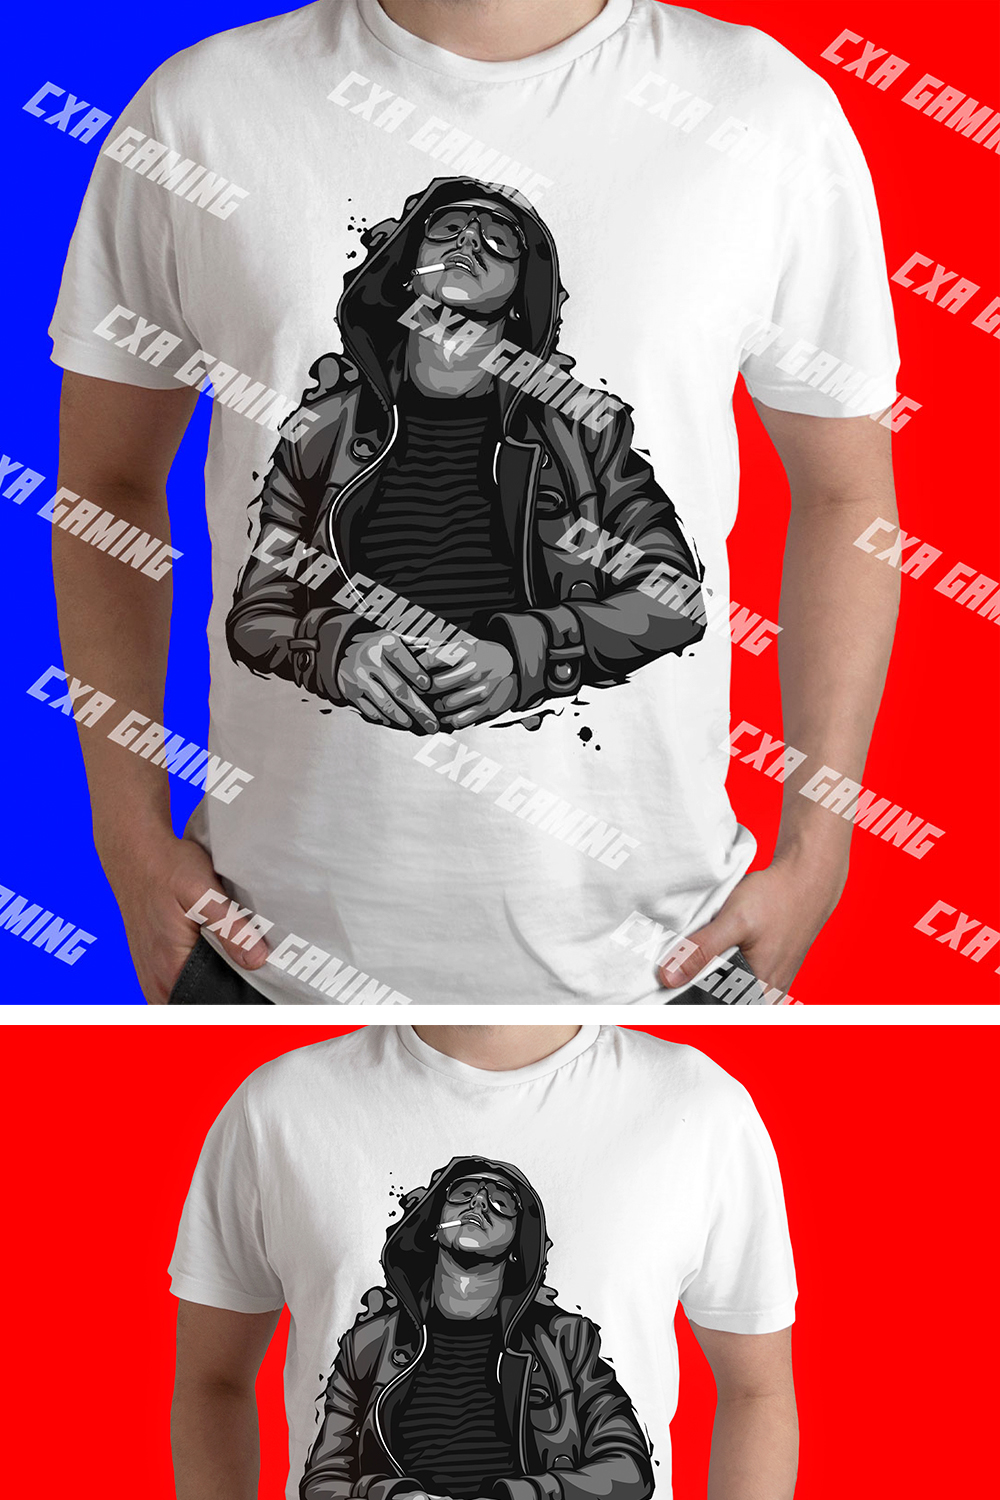 T-Shirt designes pinterest preview image.